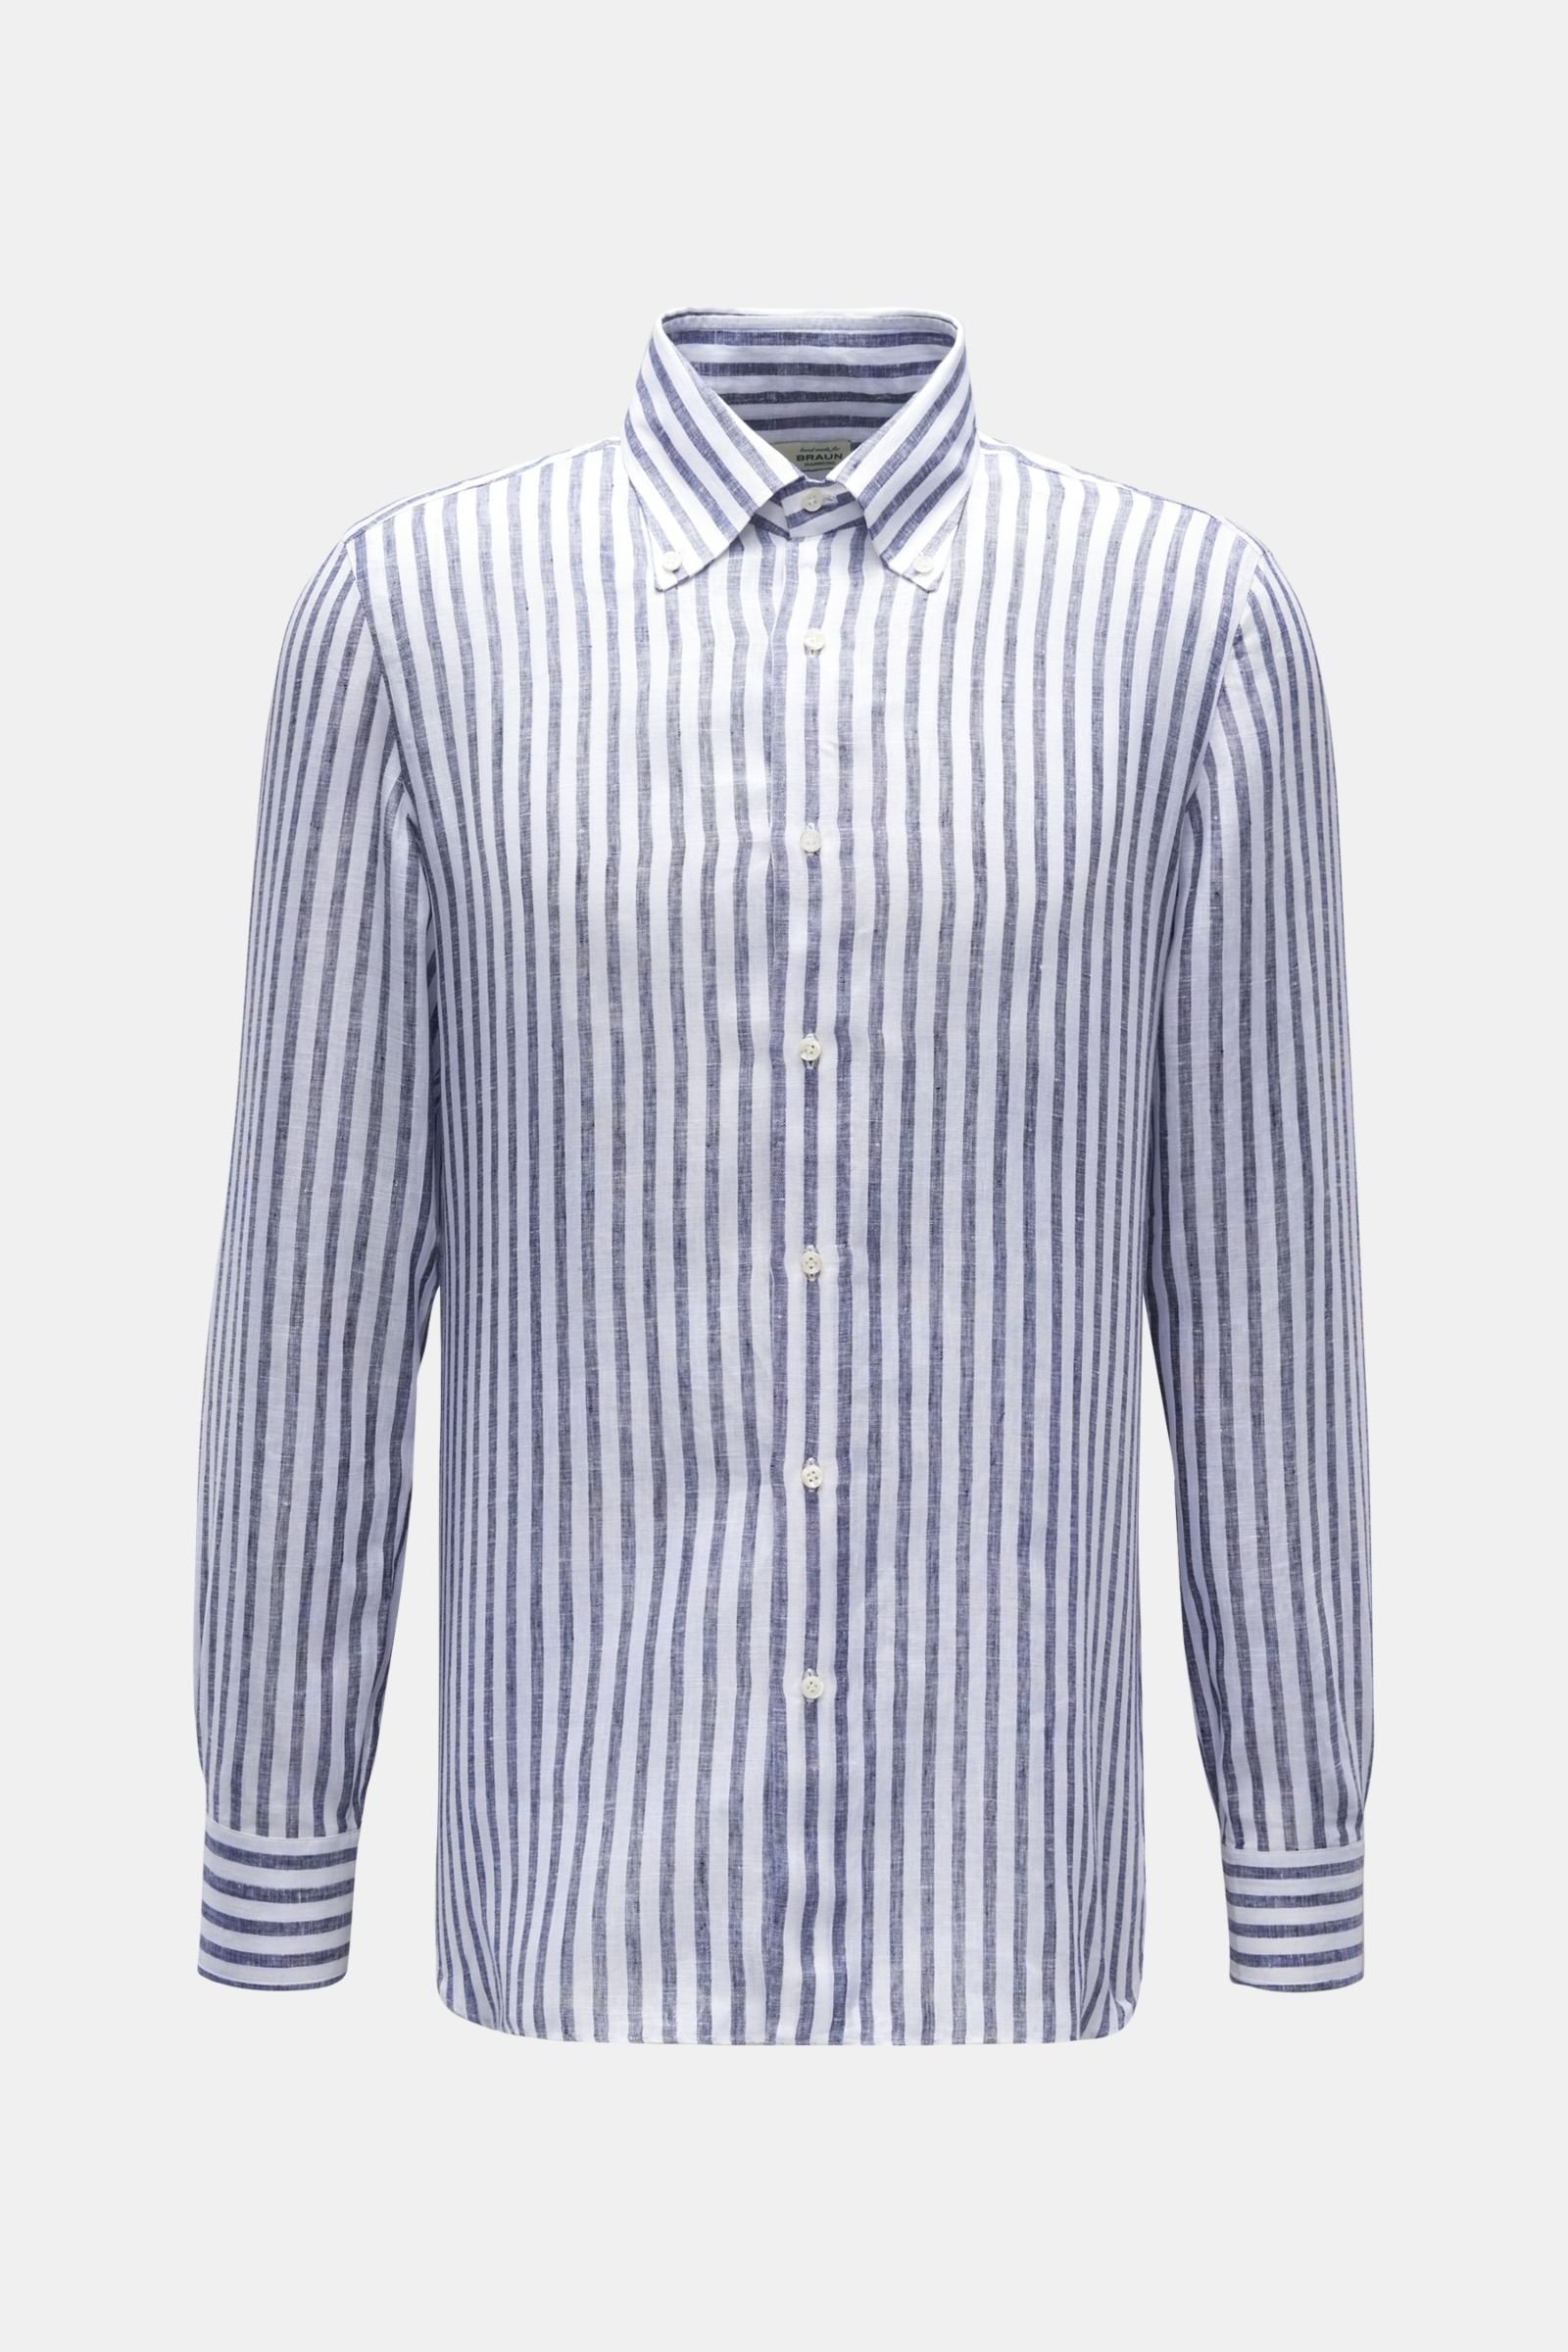 Leinenhemd 'Gable' Button-Down-Kragen graublau/weiß gestreift